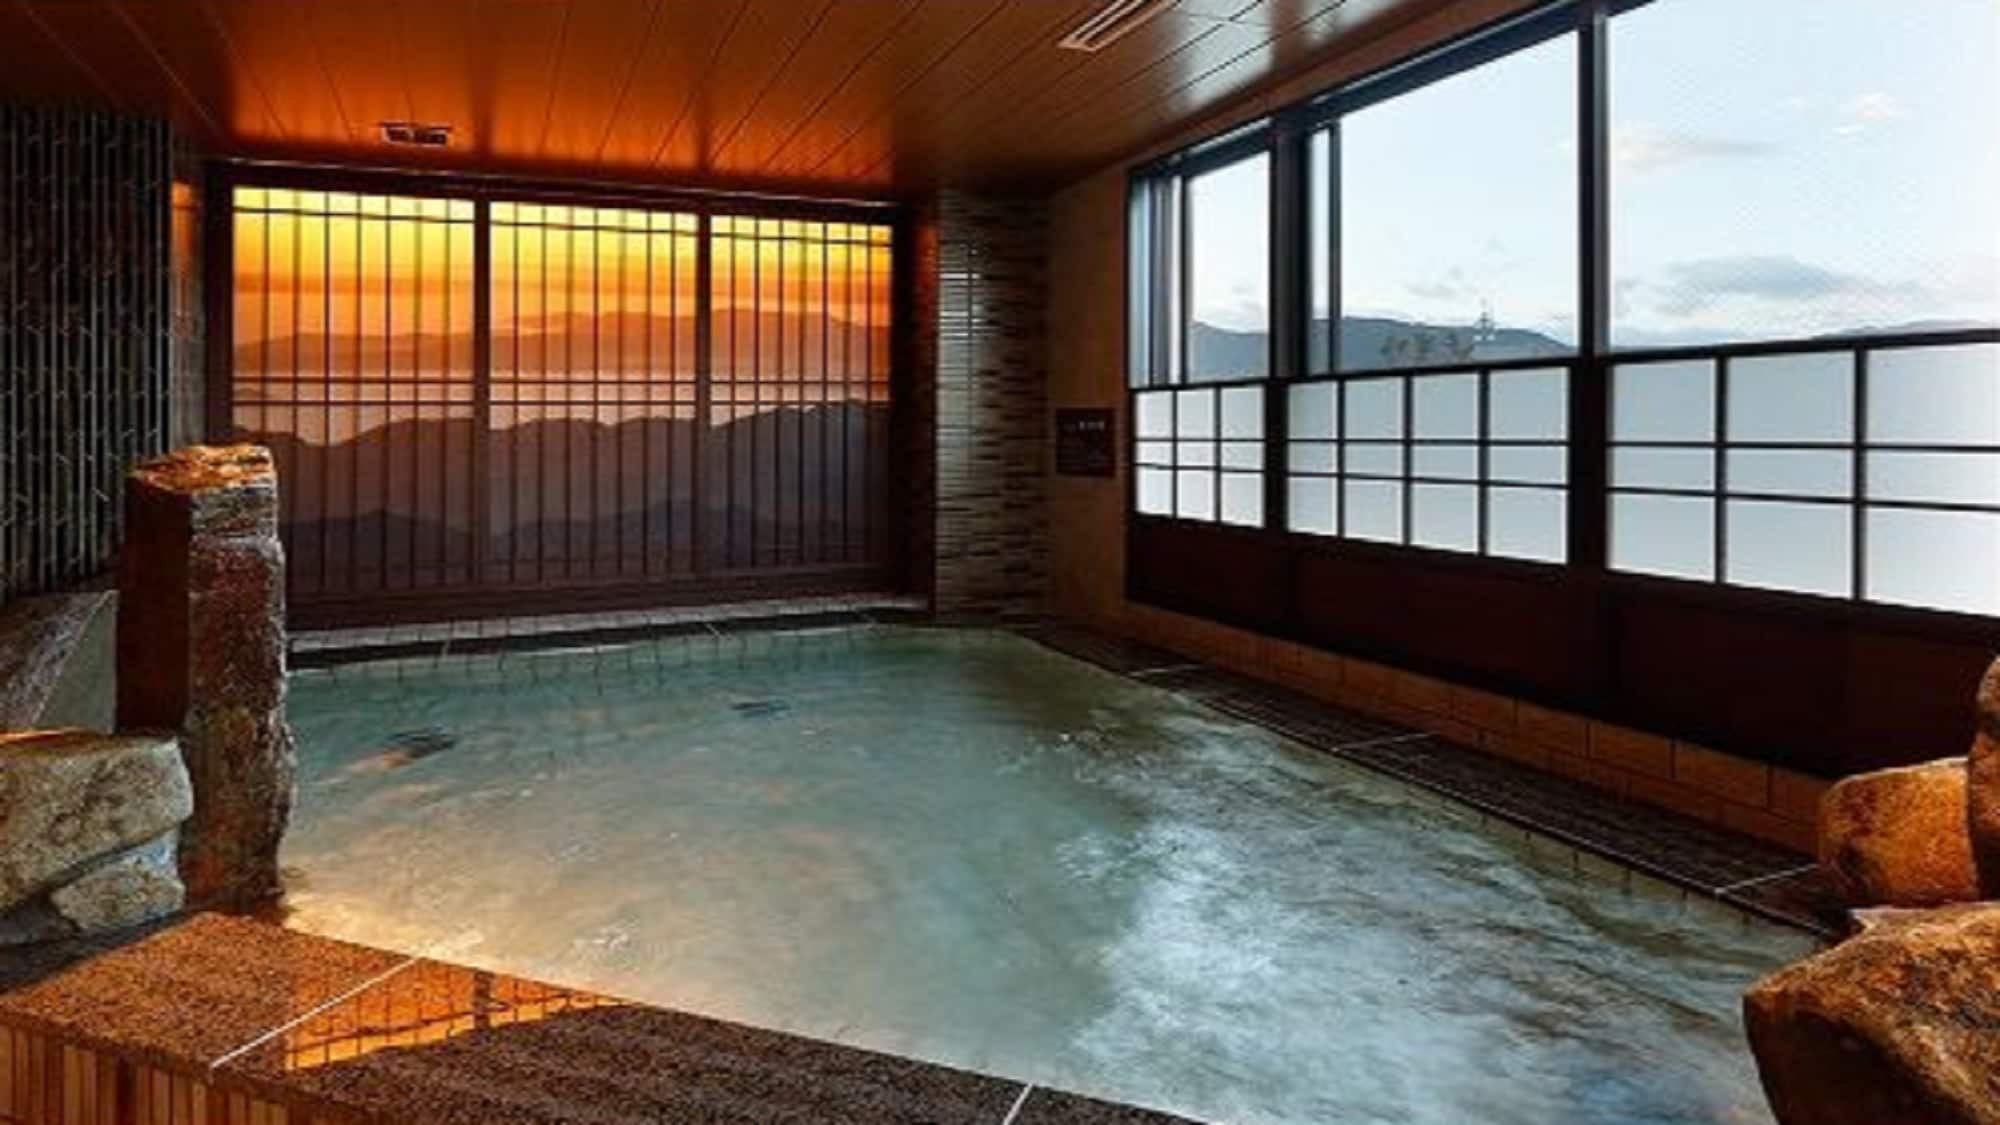  ◆ [Men] Indoor bath (hot water temperature 40-41 ℃)